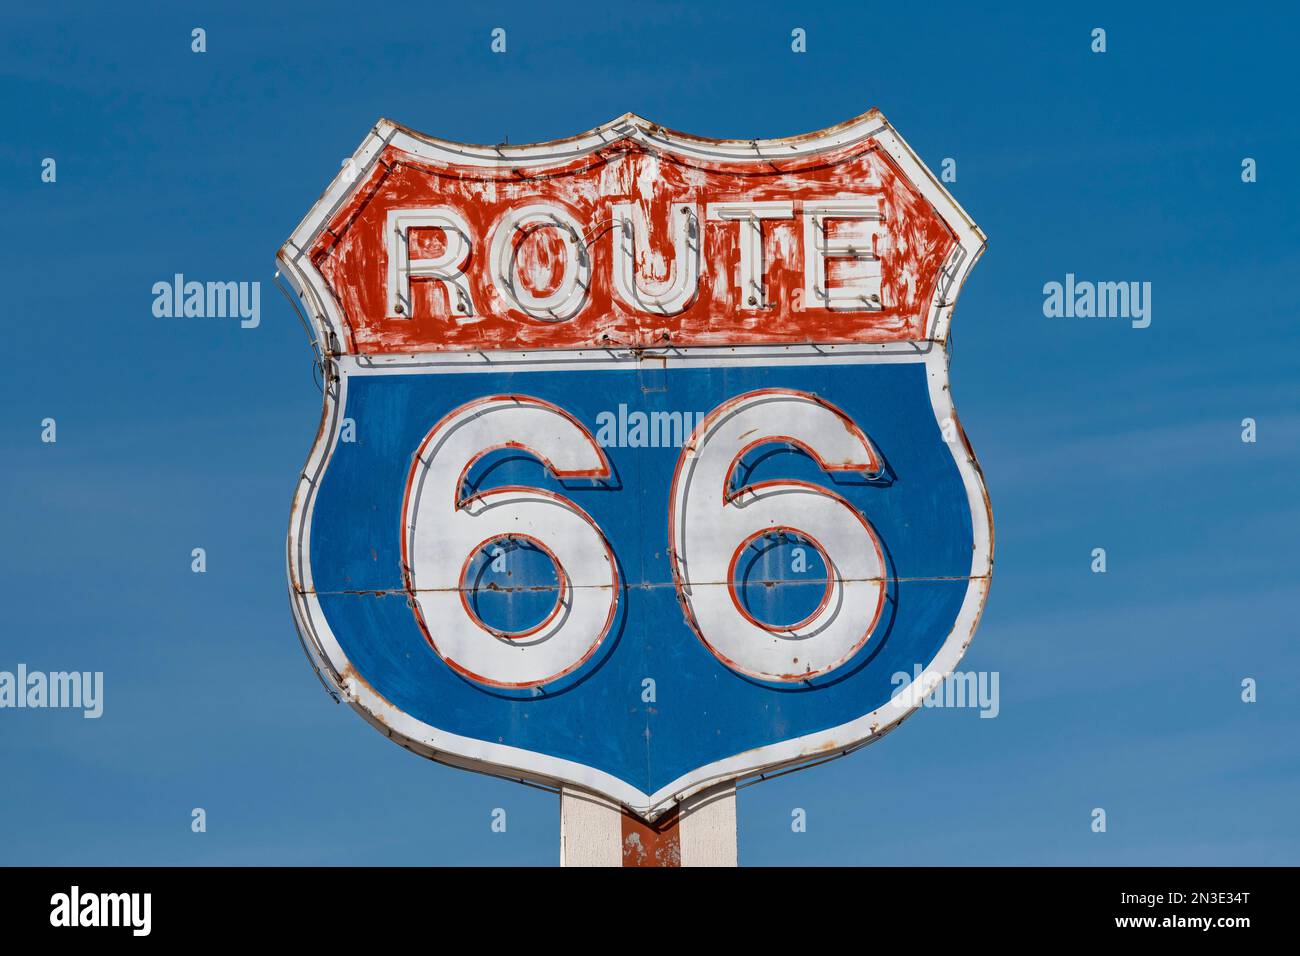 Un classico e iconico cartello della Route 66 che si trova nel New Mexico orientale; Moriarty, New Mexico, Stati Uniti d'America Foto Stock